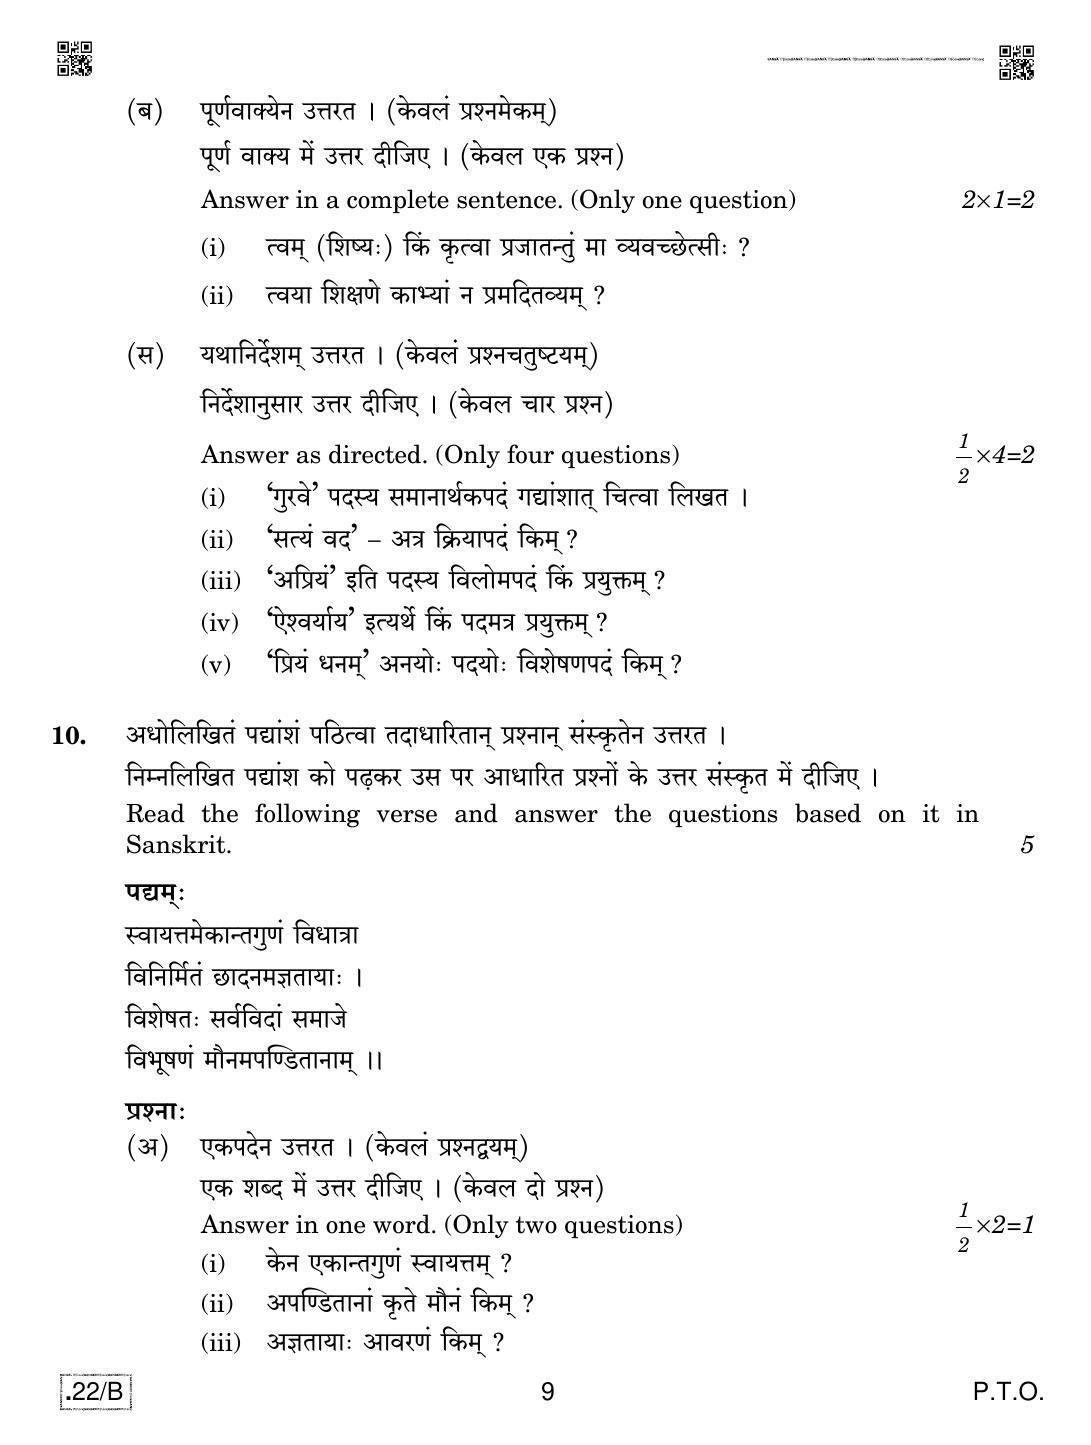 CBSE Class 12 Sanskrit Core 2020 Compartment Question Paper - Page 9